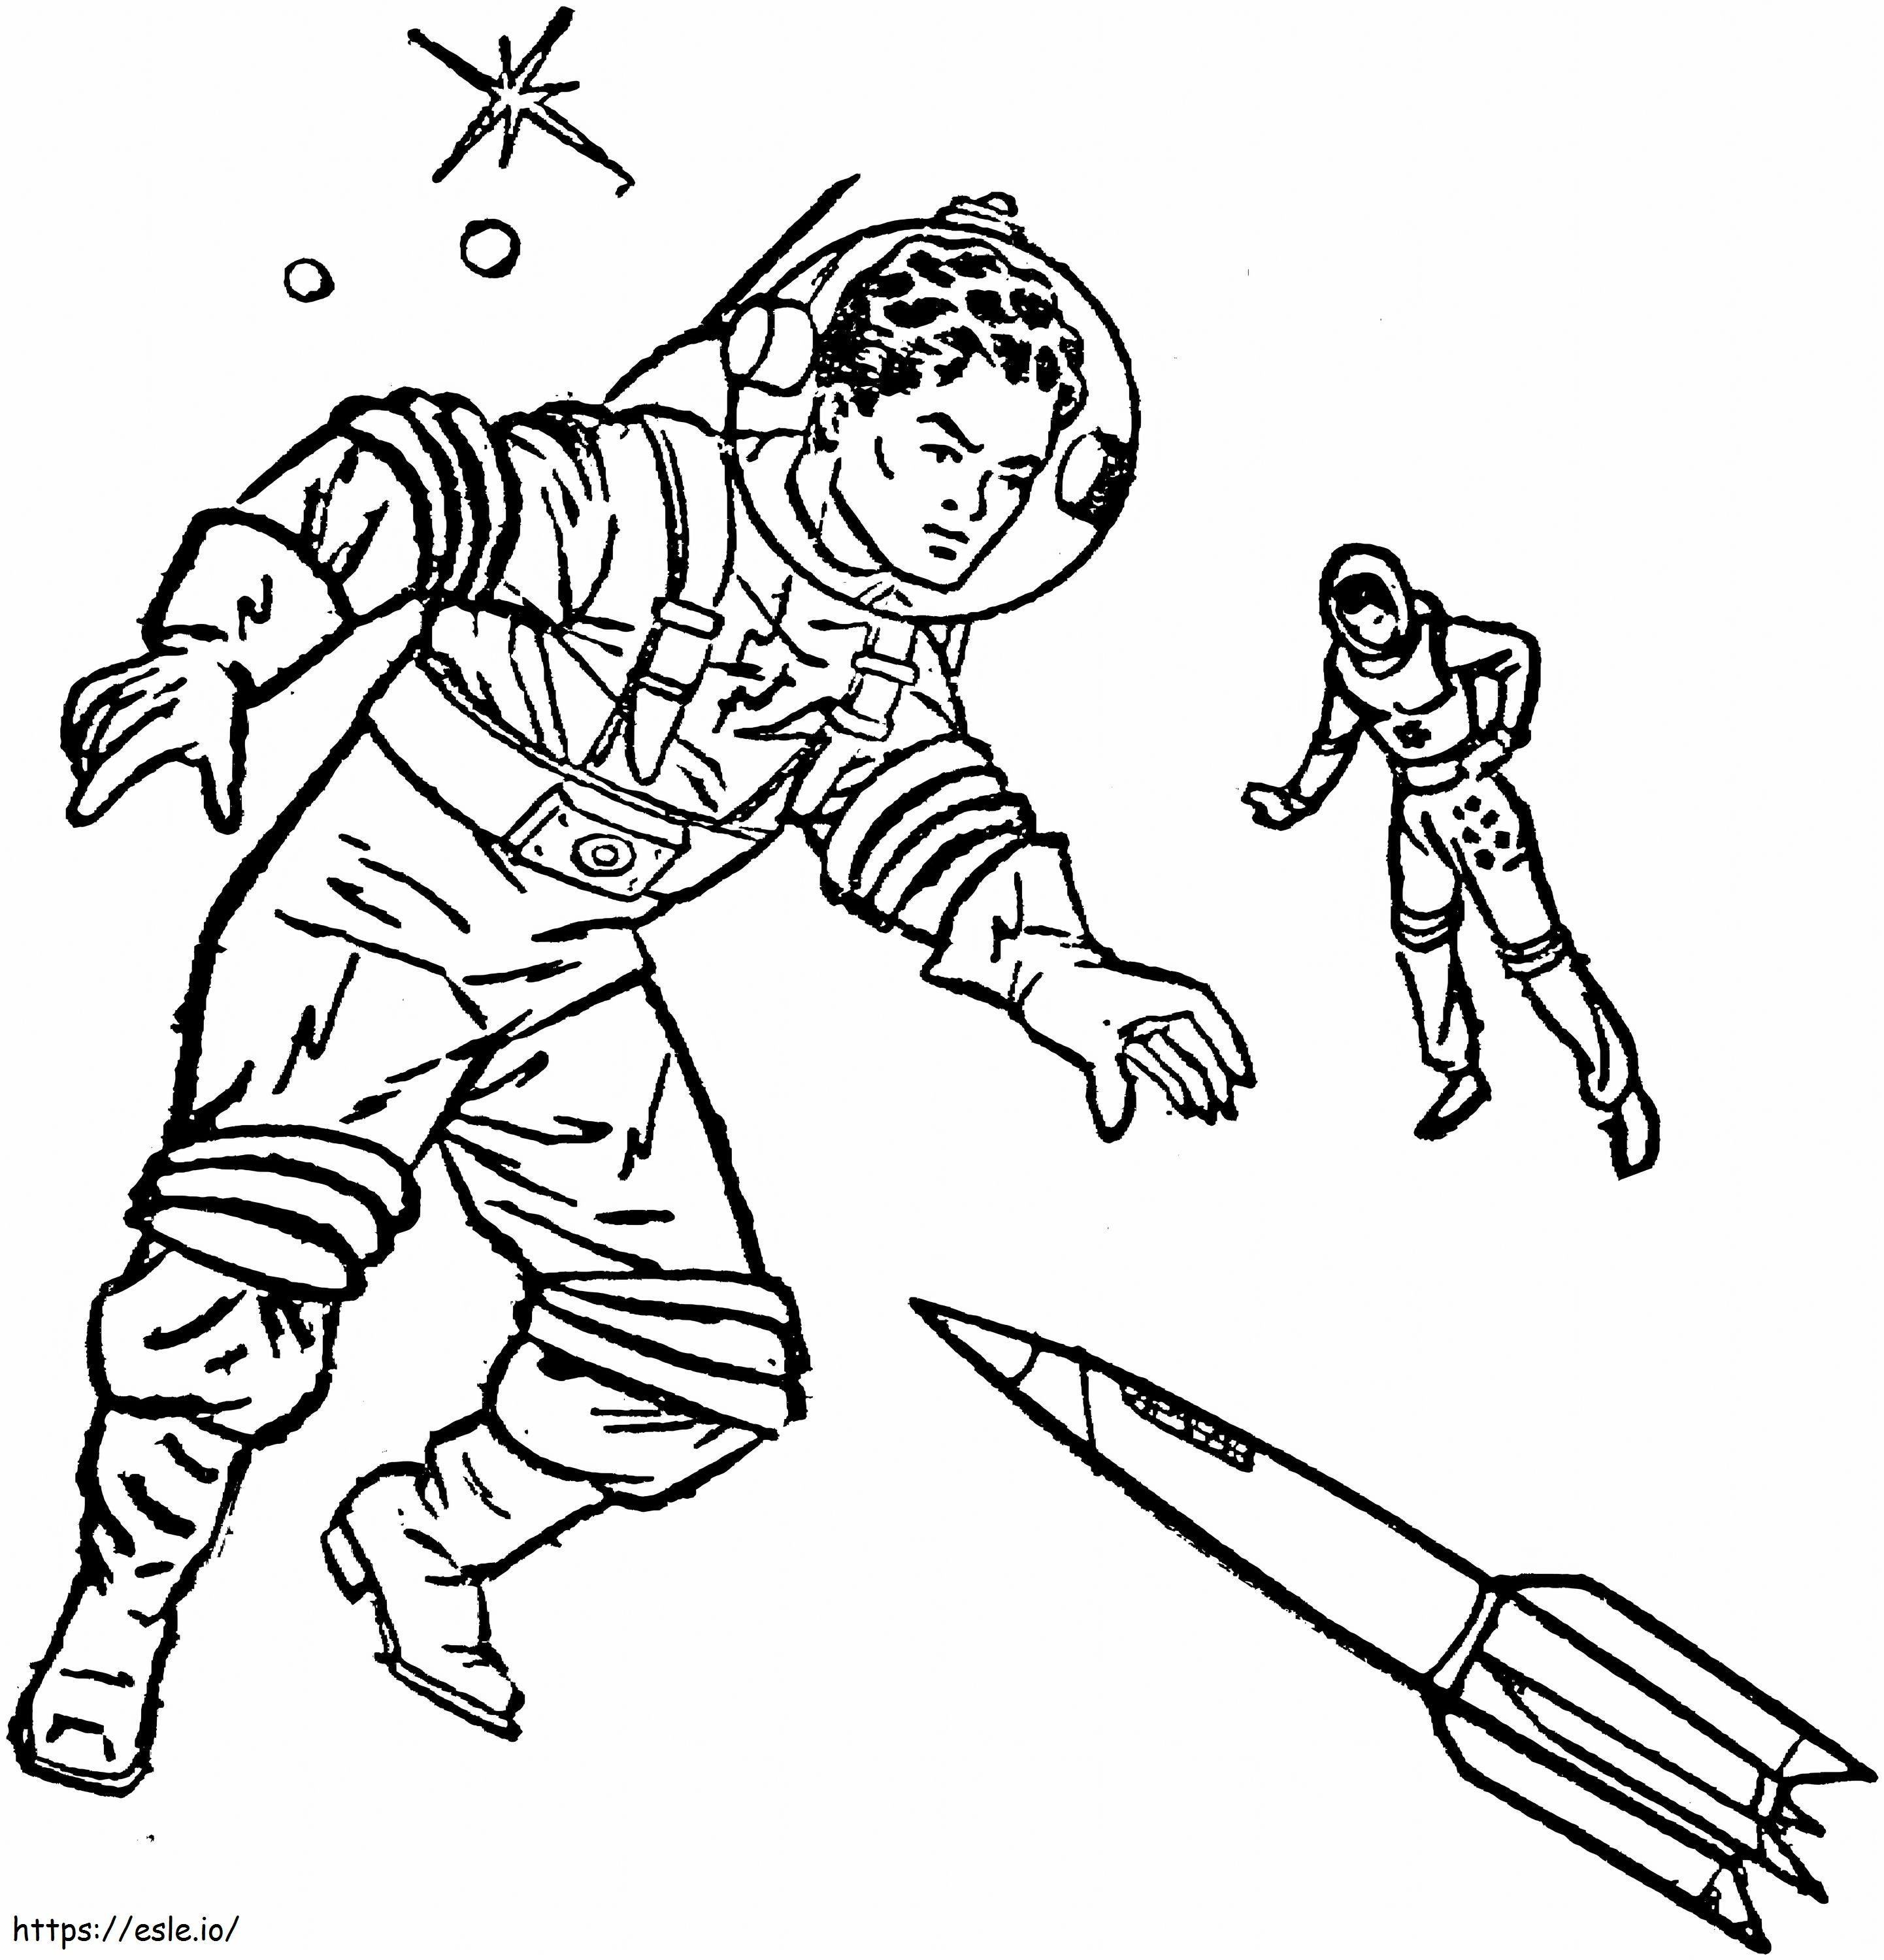 Dibujo de astronauta y cohete para colorear